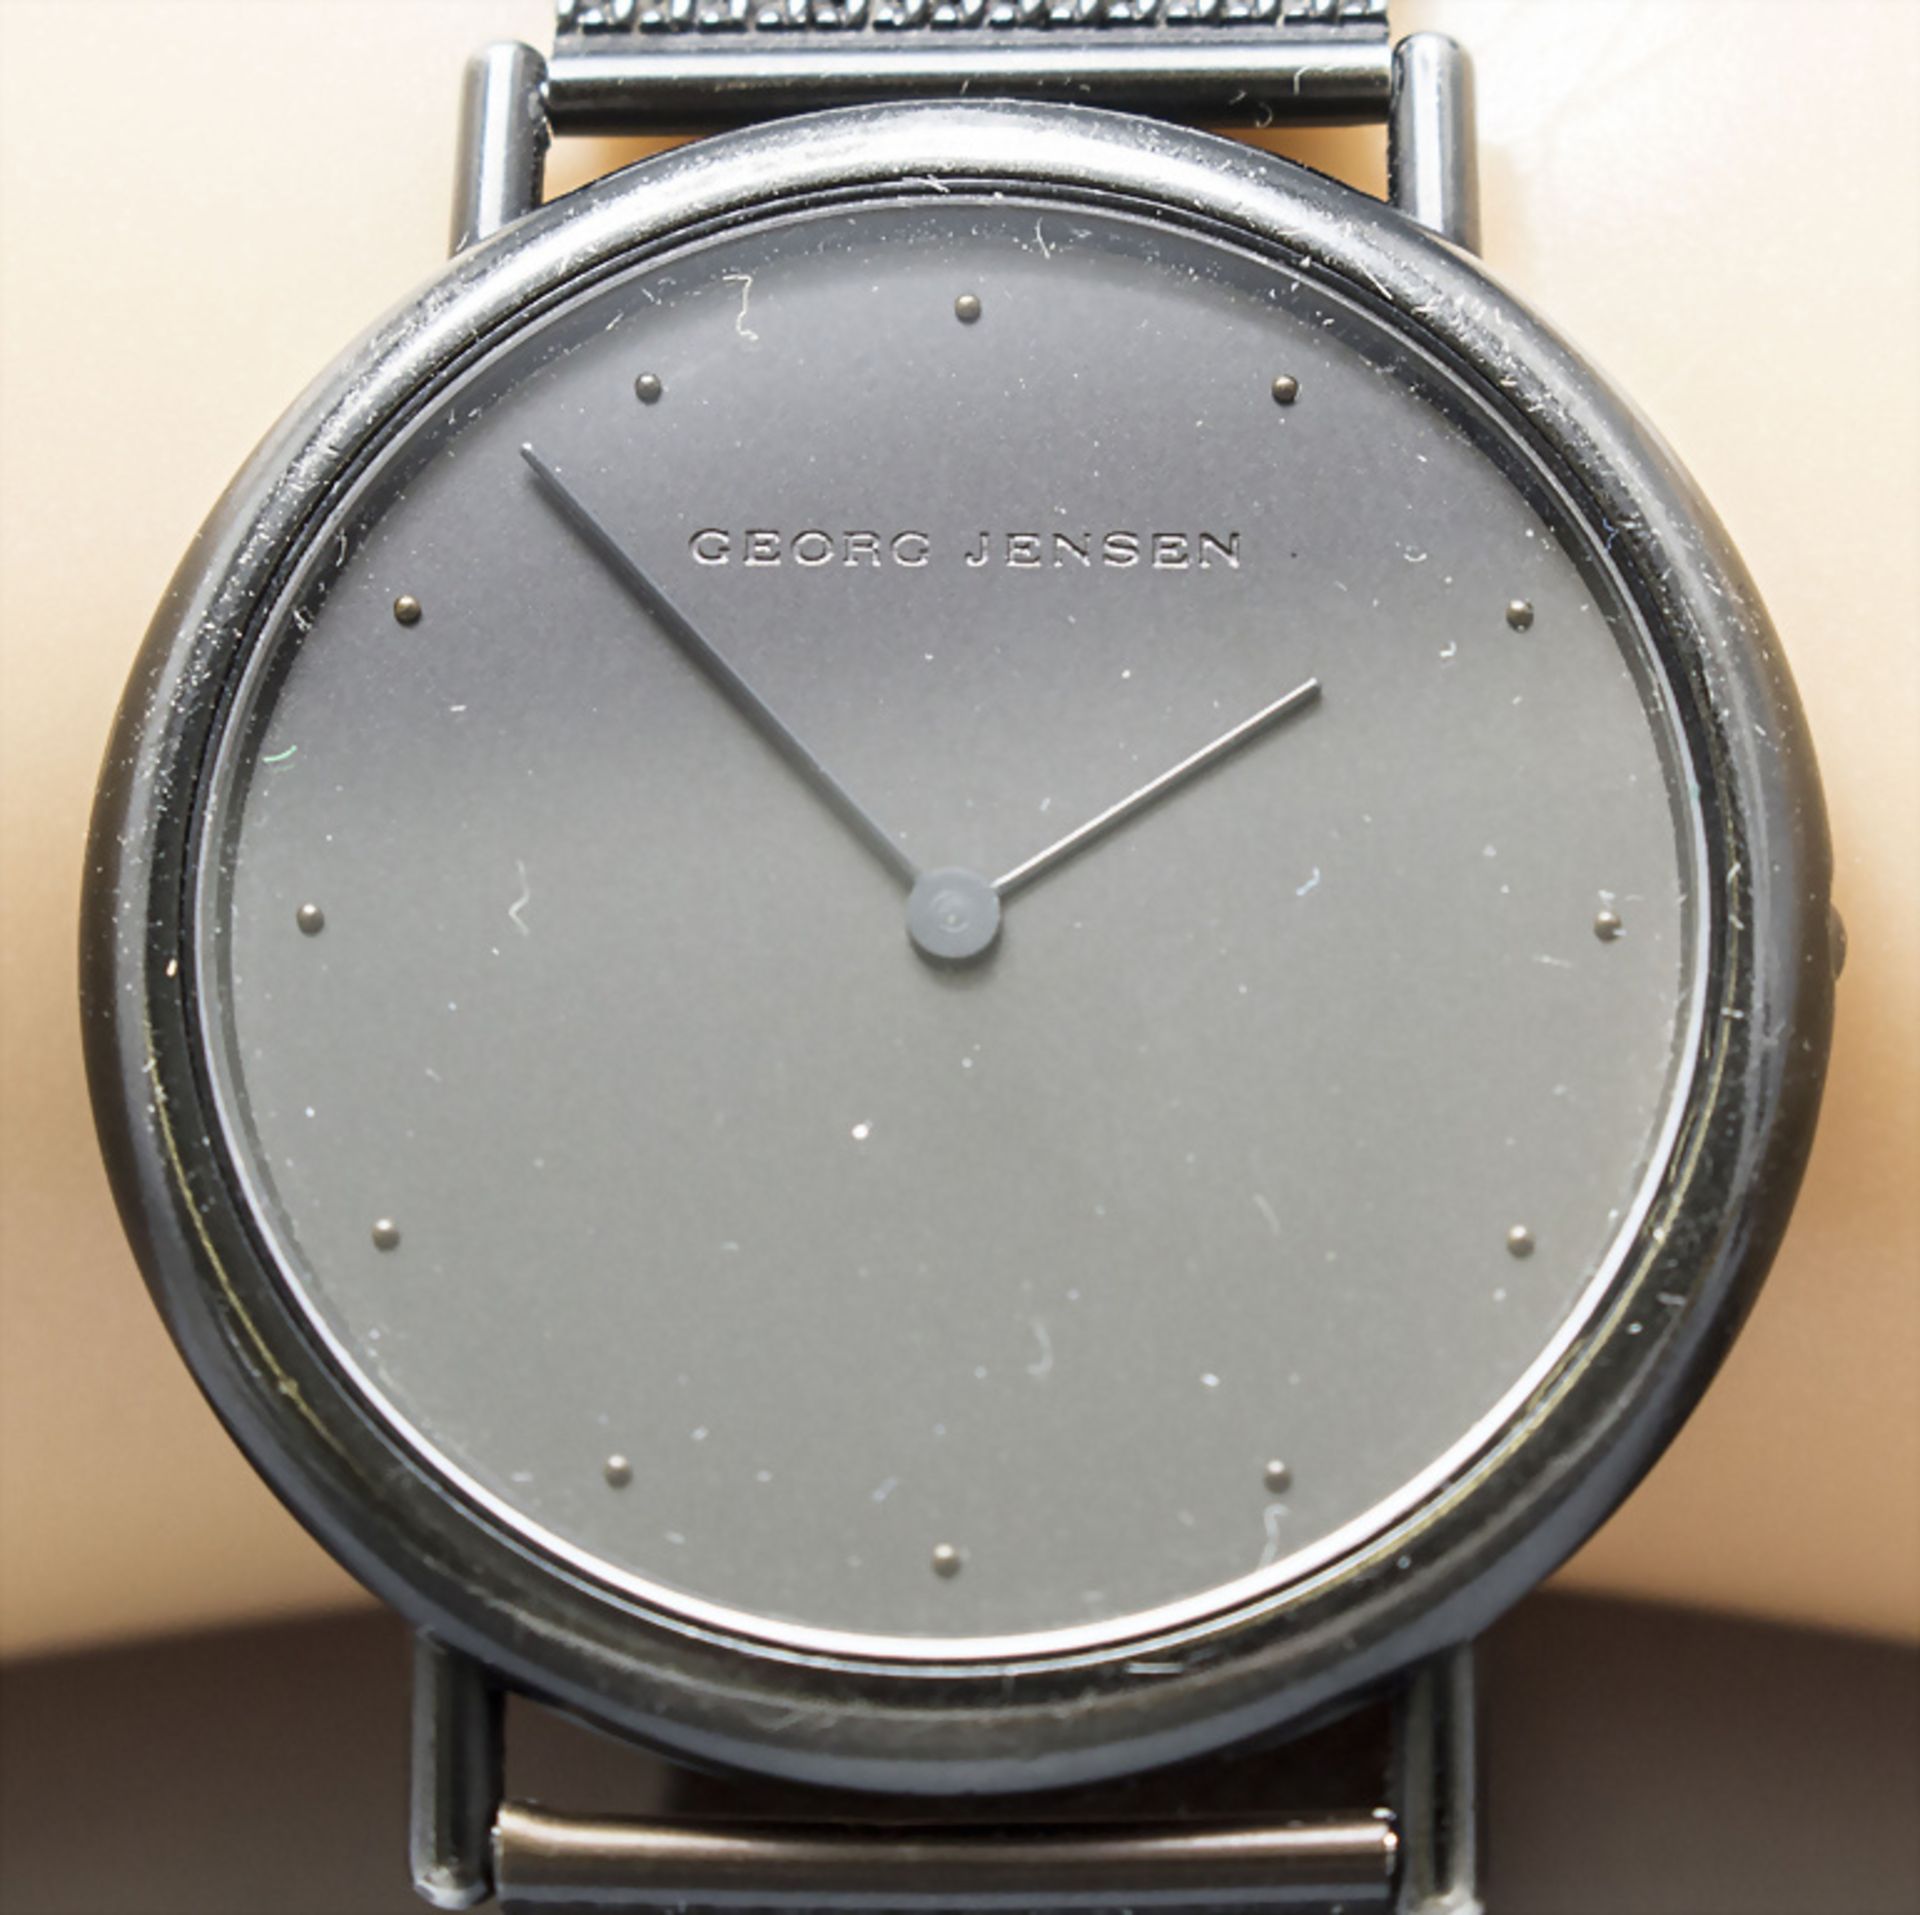 HAU Thorup & Bonderup / A wrist watch Thorup & Bonderup, Georg Jensen, Dänemark, 1980er Jahre